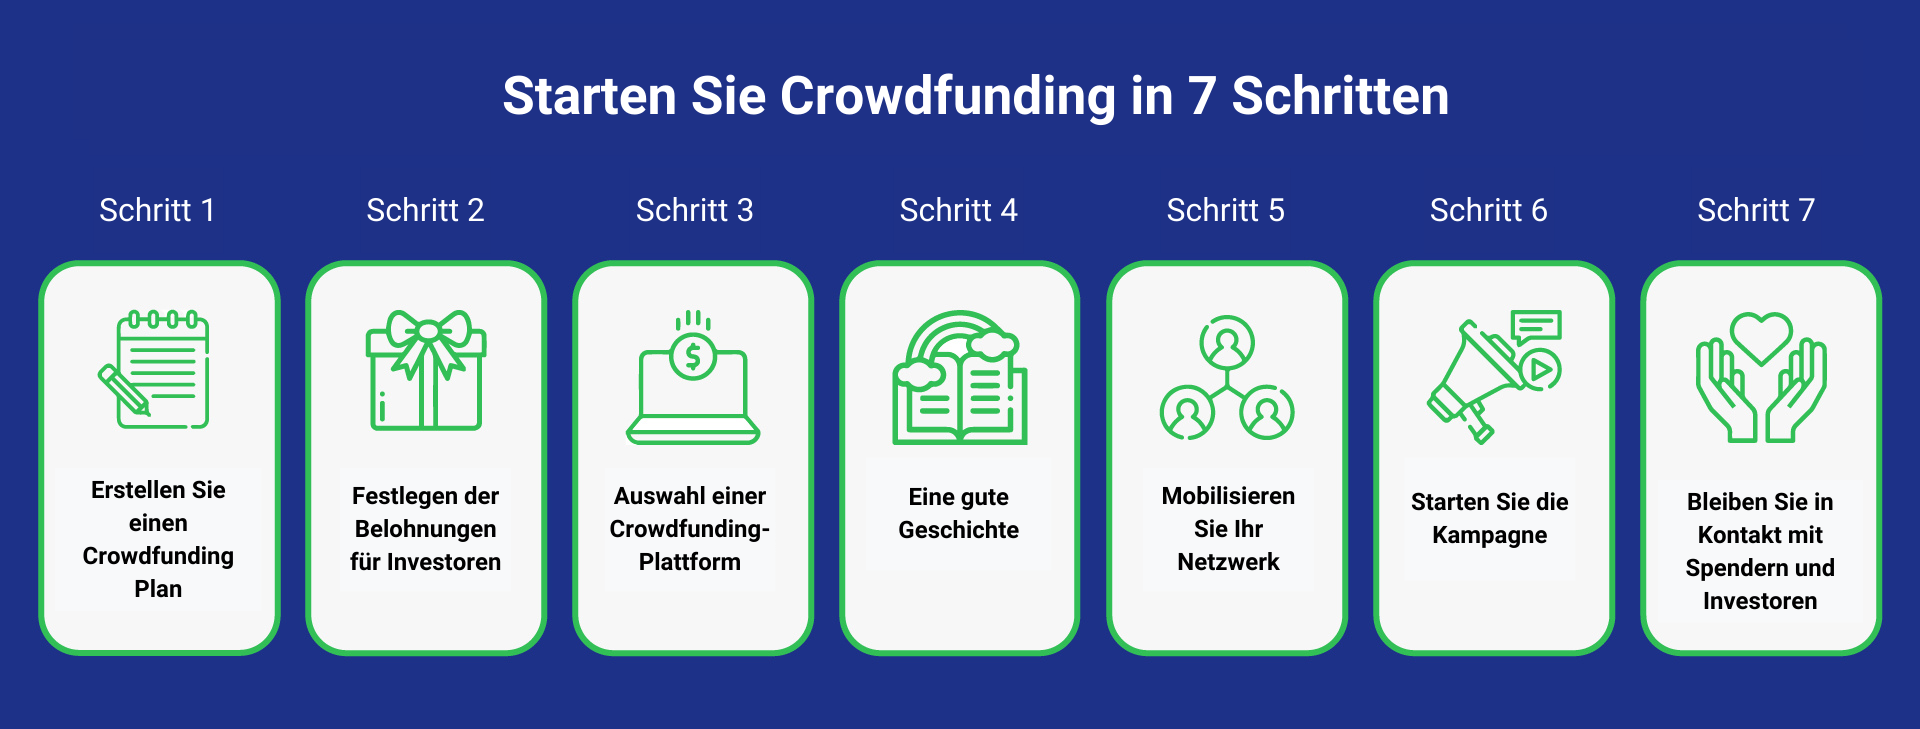 Crowdfunding in 7 Schritten